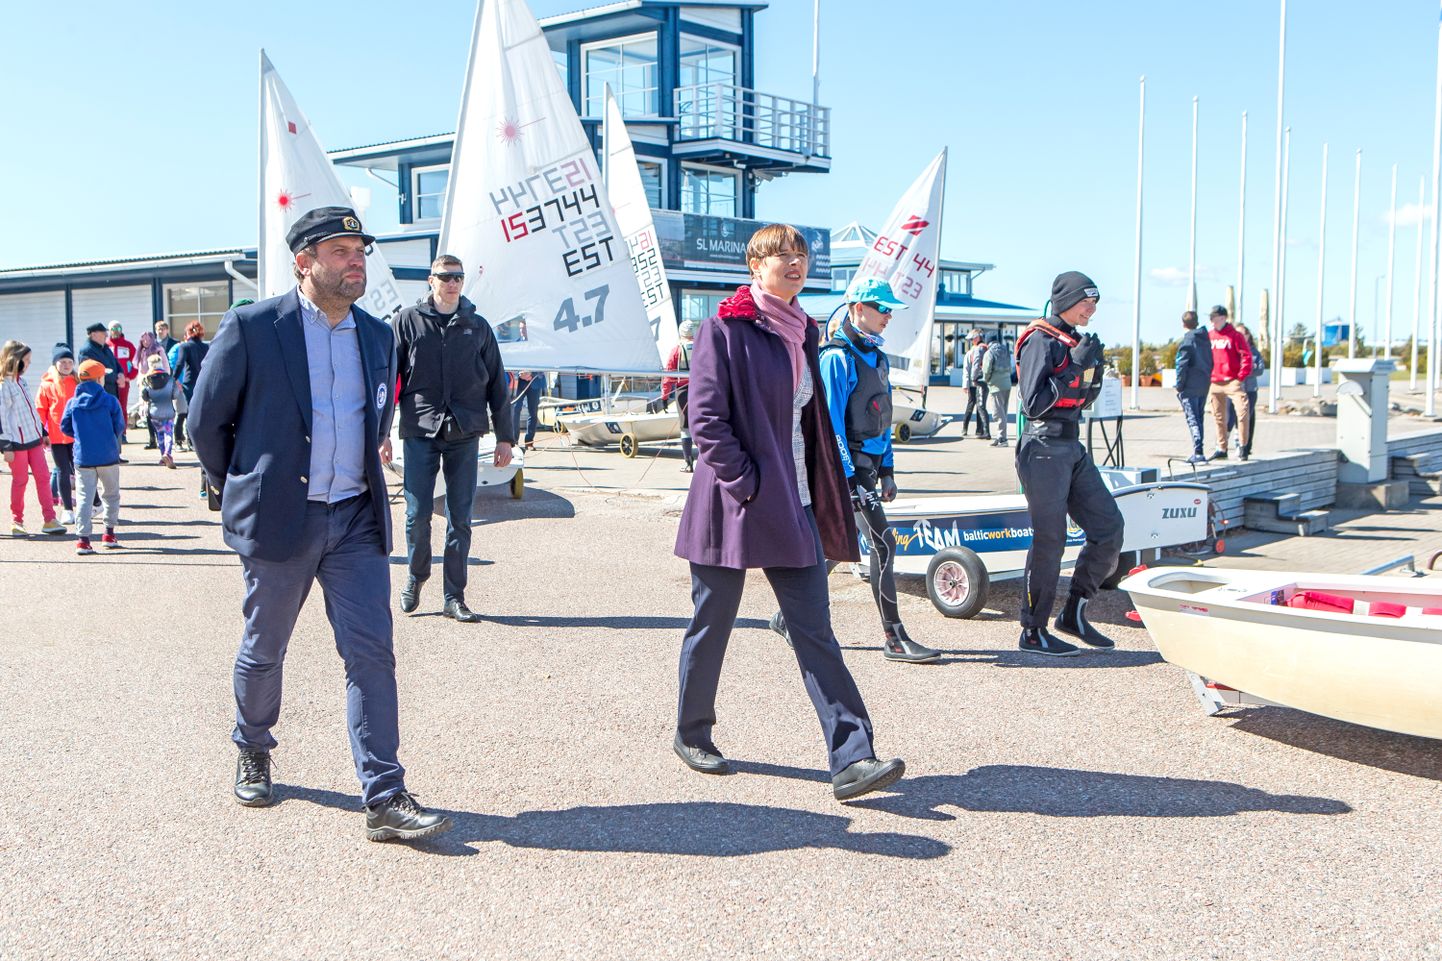 presidendi kolleeg: Priit Kuusk 2020. aasta maikuus koos president Kersti Kaljulaidiga Kuressaare sadamas. Bellingshauseni pardal olid nad kolleegid, Priit tüürimees ja Kersti madrus.